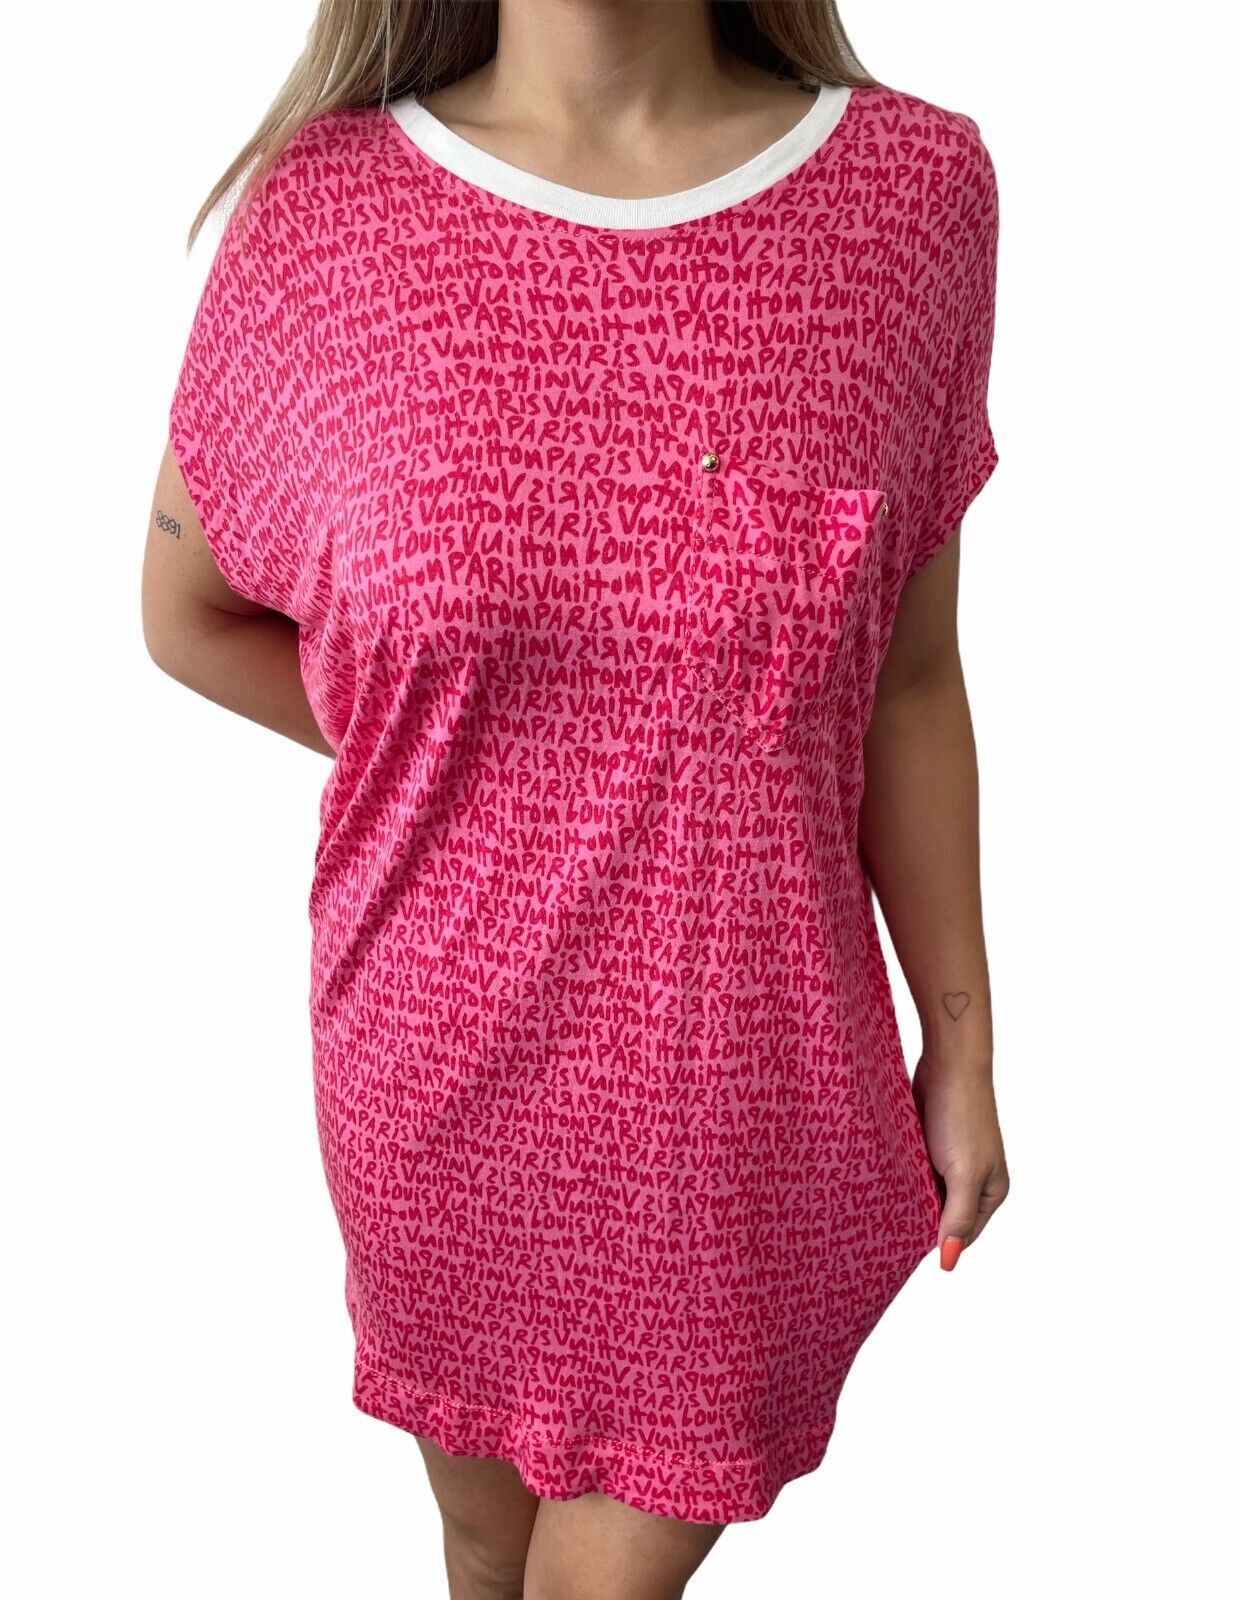 LOUIS VUITTON Vintage Graffiti Logo Tunic #S Top Dress Pocket Pink Rank A